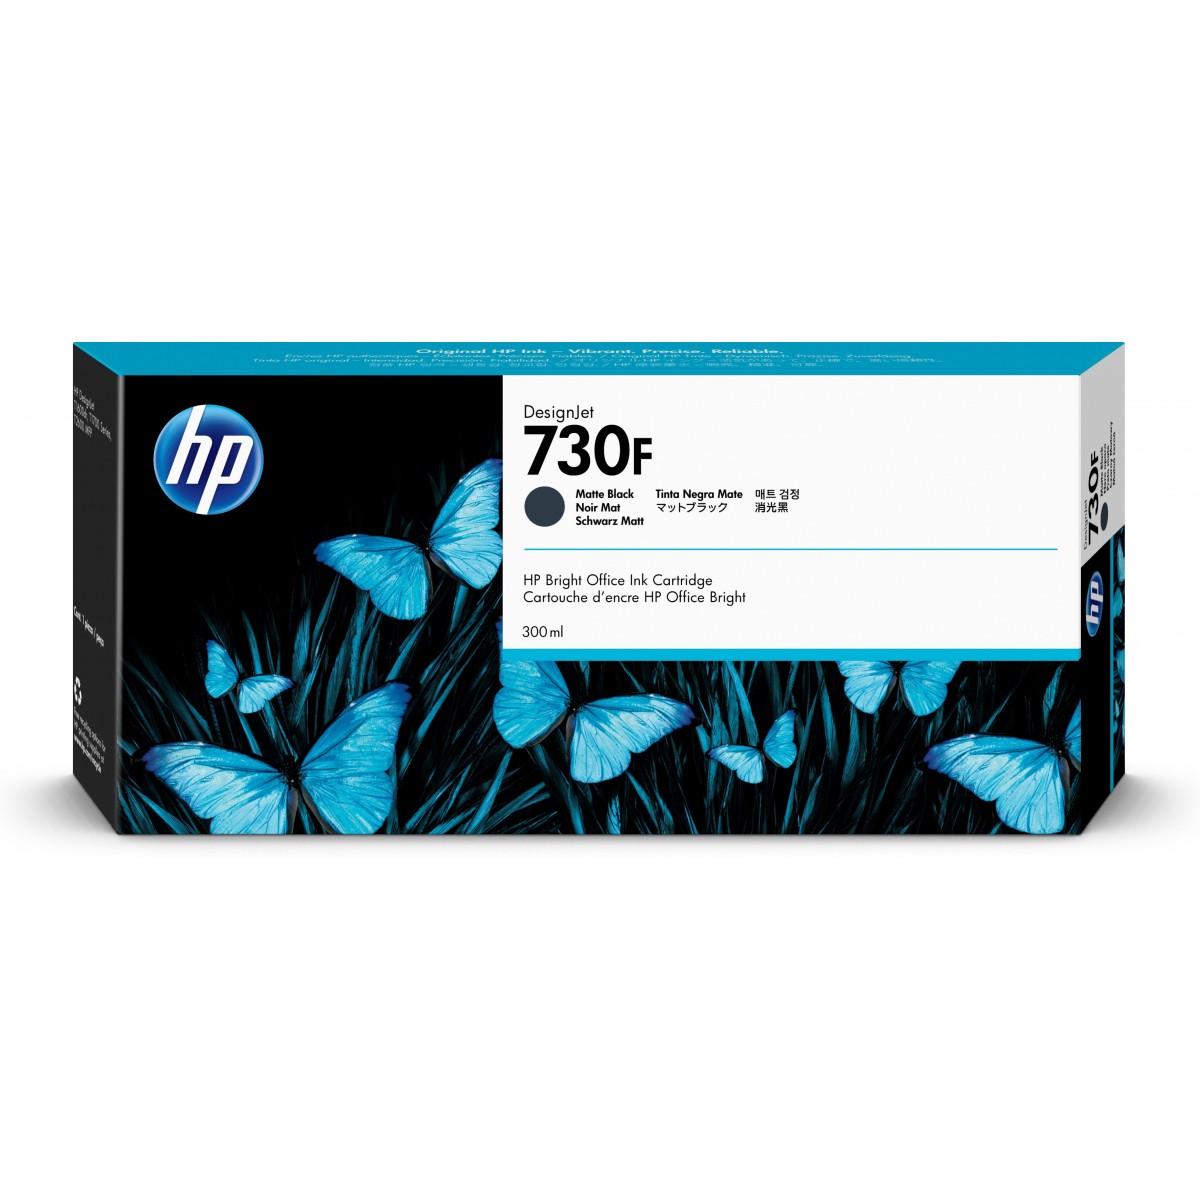 HP 730F 300-ml Matte Black DesignJet Ink Cartridge - Original - Dye-based ink - Matte black - HP - HP DesignJet T1700 Printer - 